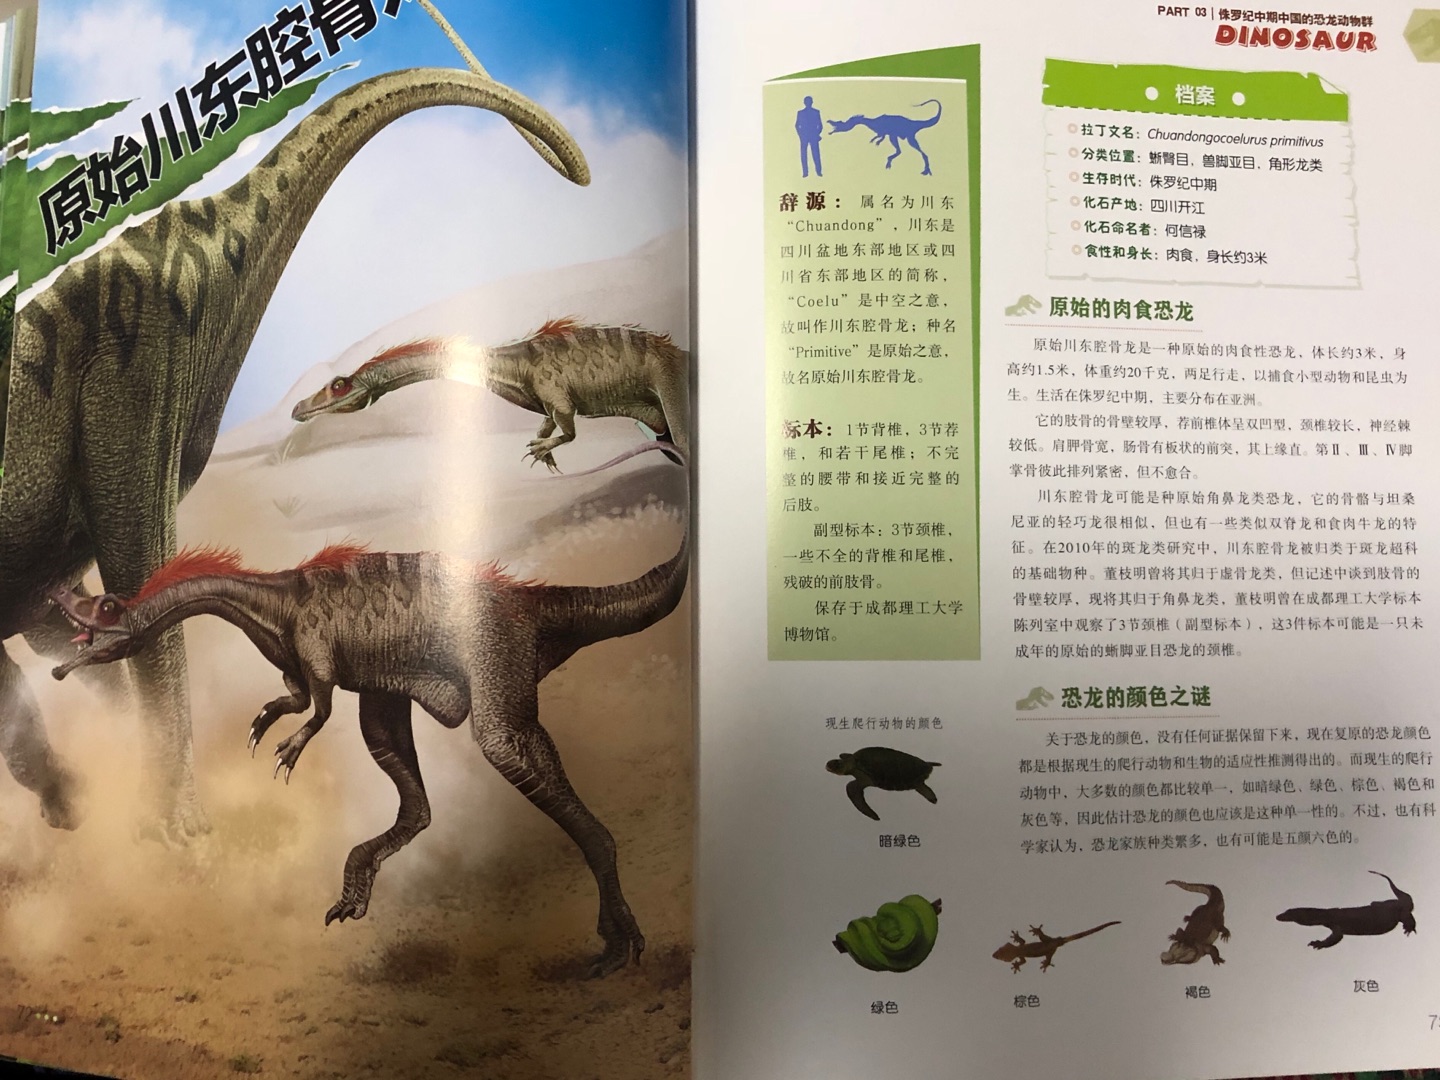 和宝宝一起阅读了《中国恐龙百科全书》，书本推荐阅读年龄7岁以上，我们年龄略小一些，但也不影响小恐龙迷的阅读兴趣。书中文字叙述不少，知识点丰富，对于低幼的我们来说有难度，家长可以简略阐述，通过大幅面的恐龙图像进行即兴讲解。这本书是以时间为主线，按五个不同时期铺开，详细介绍了曾经生活在我国的160多种恐龙，纵观全书，俨然一本字典类工具用书。书本不仅限于恐龙知识的介绍，也穿插了许多古生物学知识，横向知识扩展，让宝宝阅读的趣味性更浓。同时，个人也很推荐成年人以一本百科类图书的定位来阅读此书，在我国恐龙生物记载方面可以说是内容详实，全面，有一定的系统性，穿插的古生物学知识更能满足成人的思考需求。总之，这是一本适读年龄跨度大的书籍，推荐大家阅读。